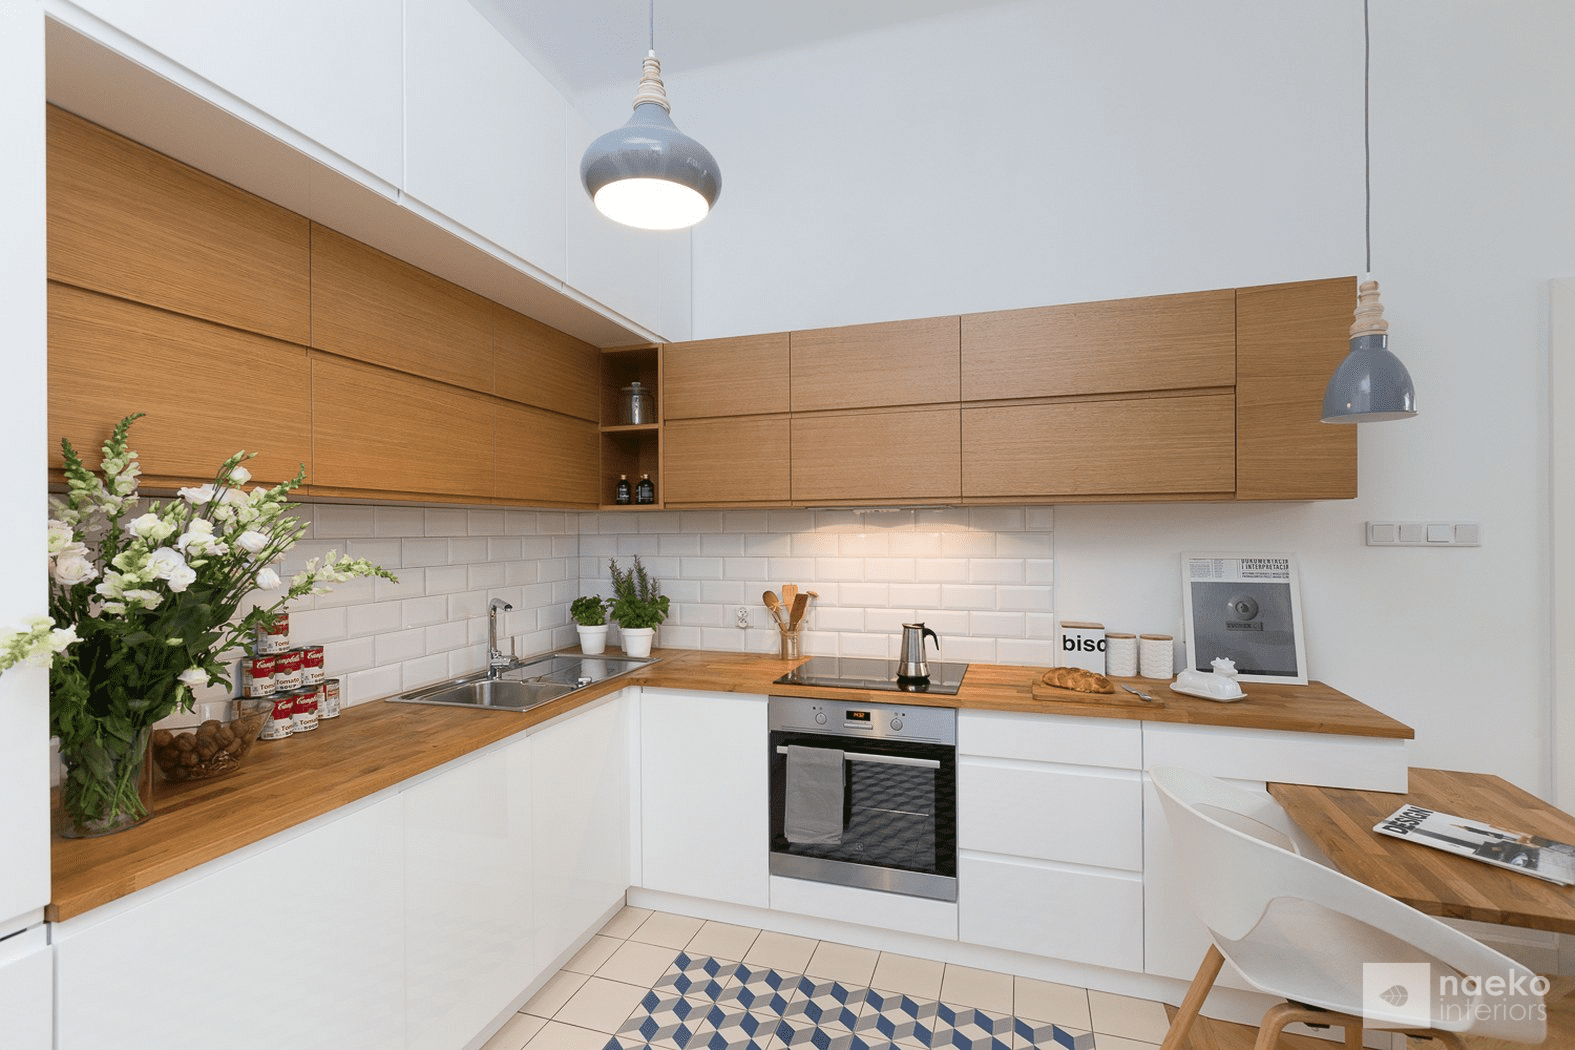 Projekt kuchni w stylu skandynawskim z białą zabudową i drewnianymi elementami oraz geometryczną mozaiką na posadzce w kolorze szaro-kremowo-granatowym